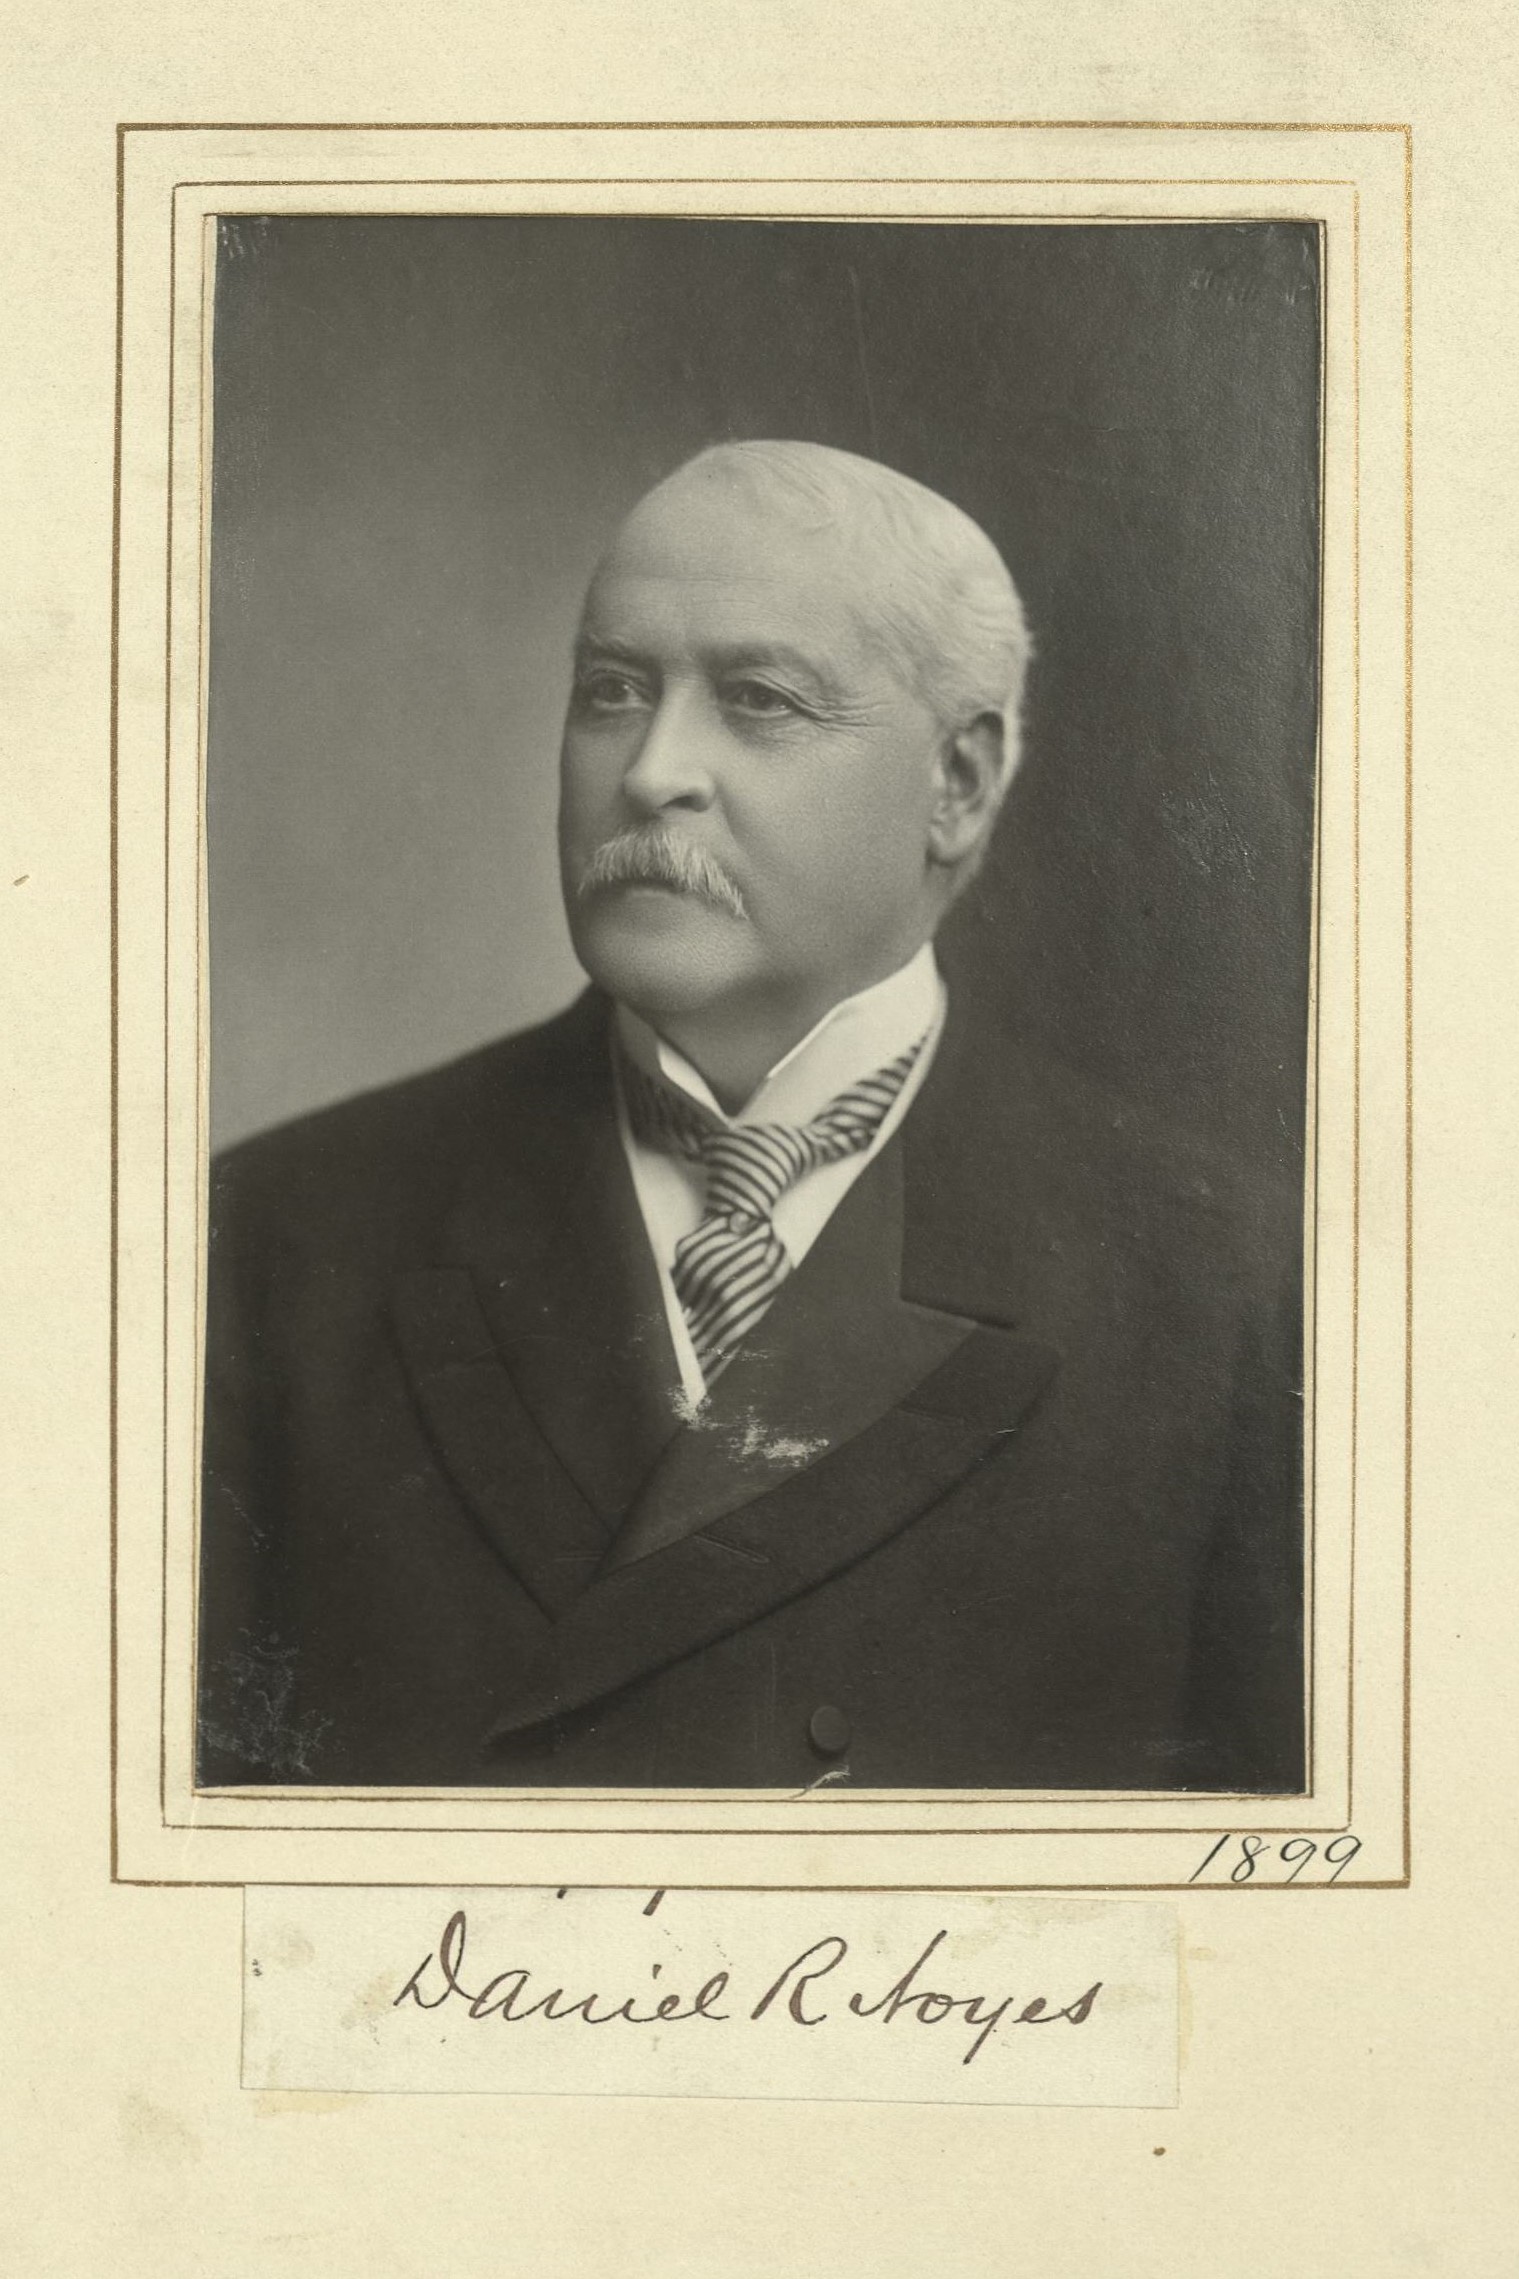 Member portrait of Daniel R. Noyes